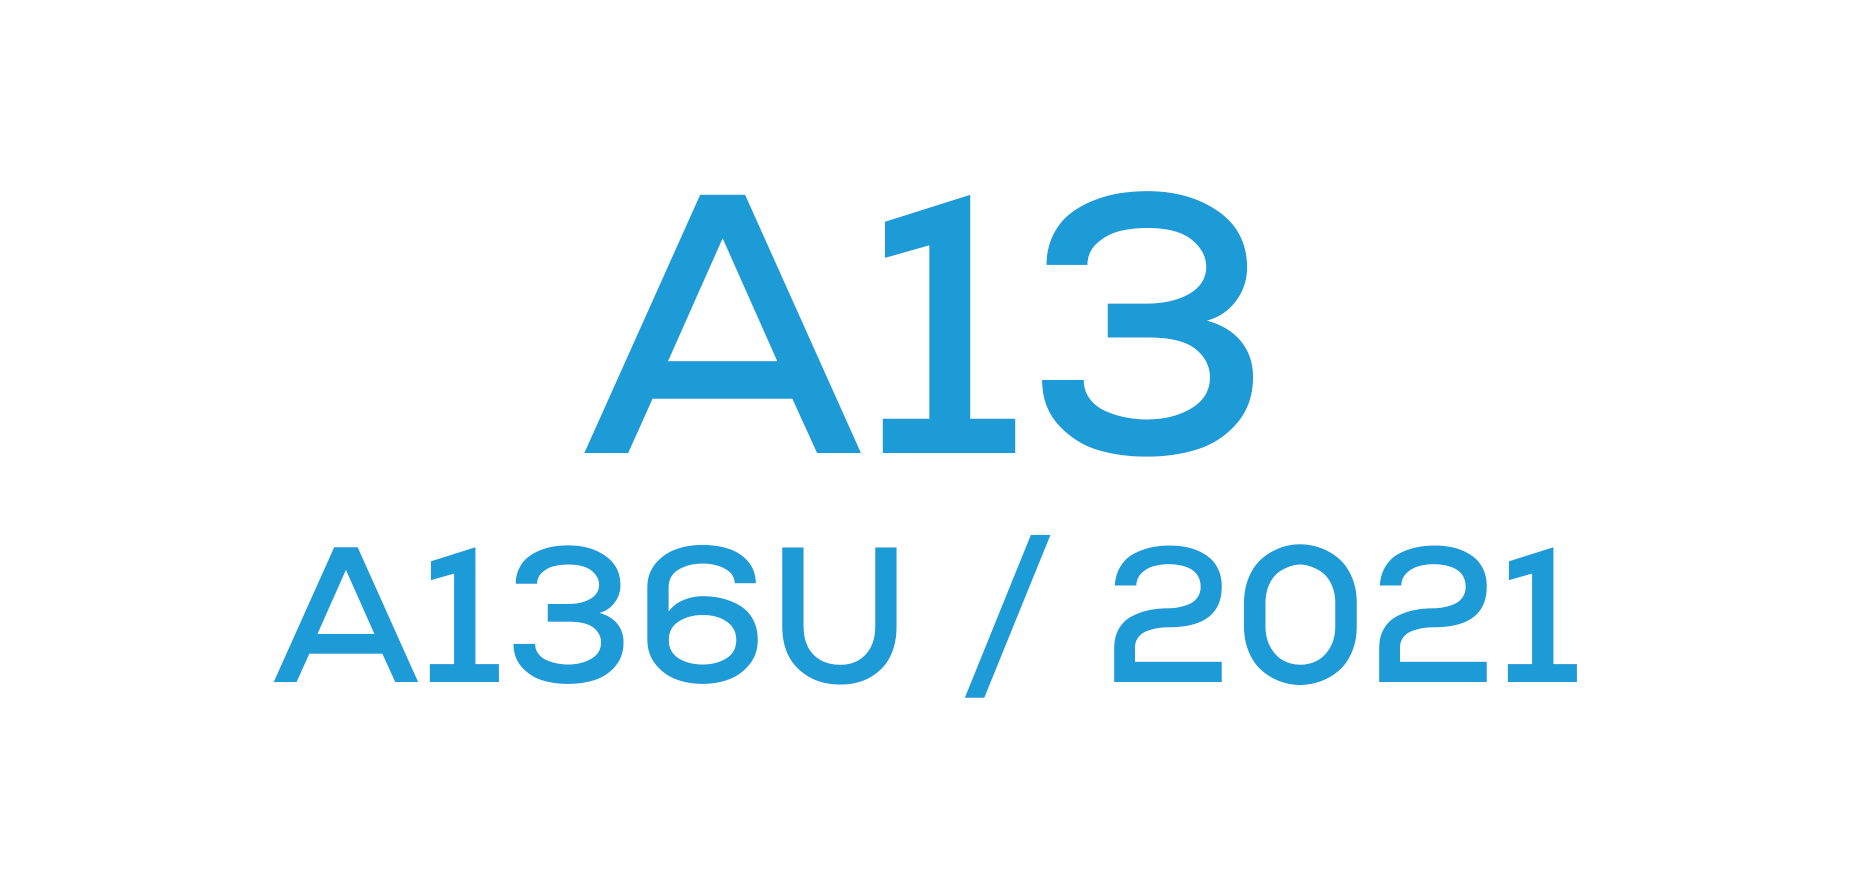 A13 5G (A136 / 2021)